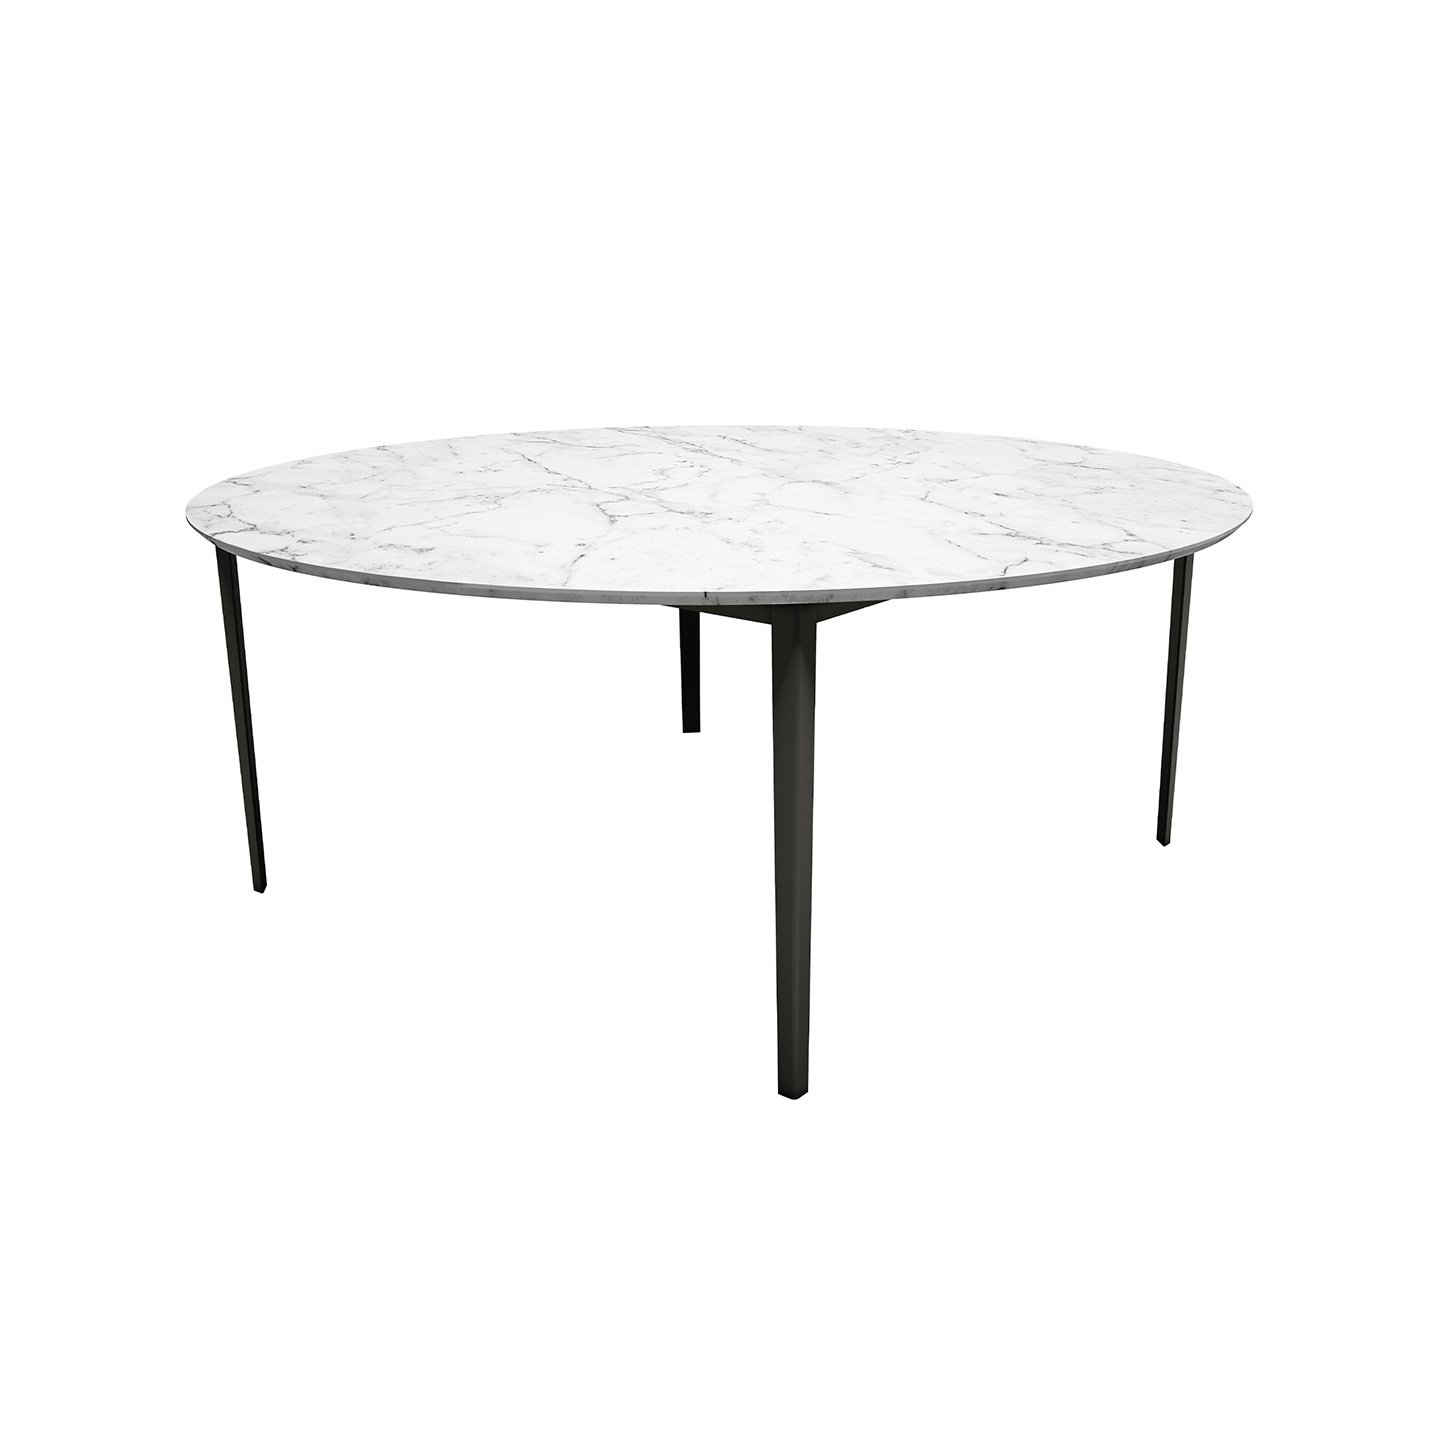 OpenUp系列桌子尽显纯粹与轻便。通过巧用线条、细节和阴影，这款桌子适合餐厅或现代和非传统的起居区。